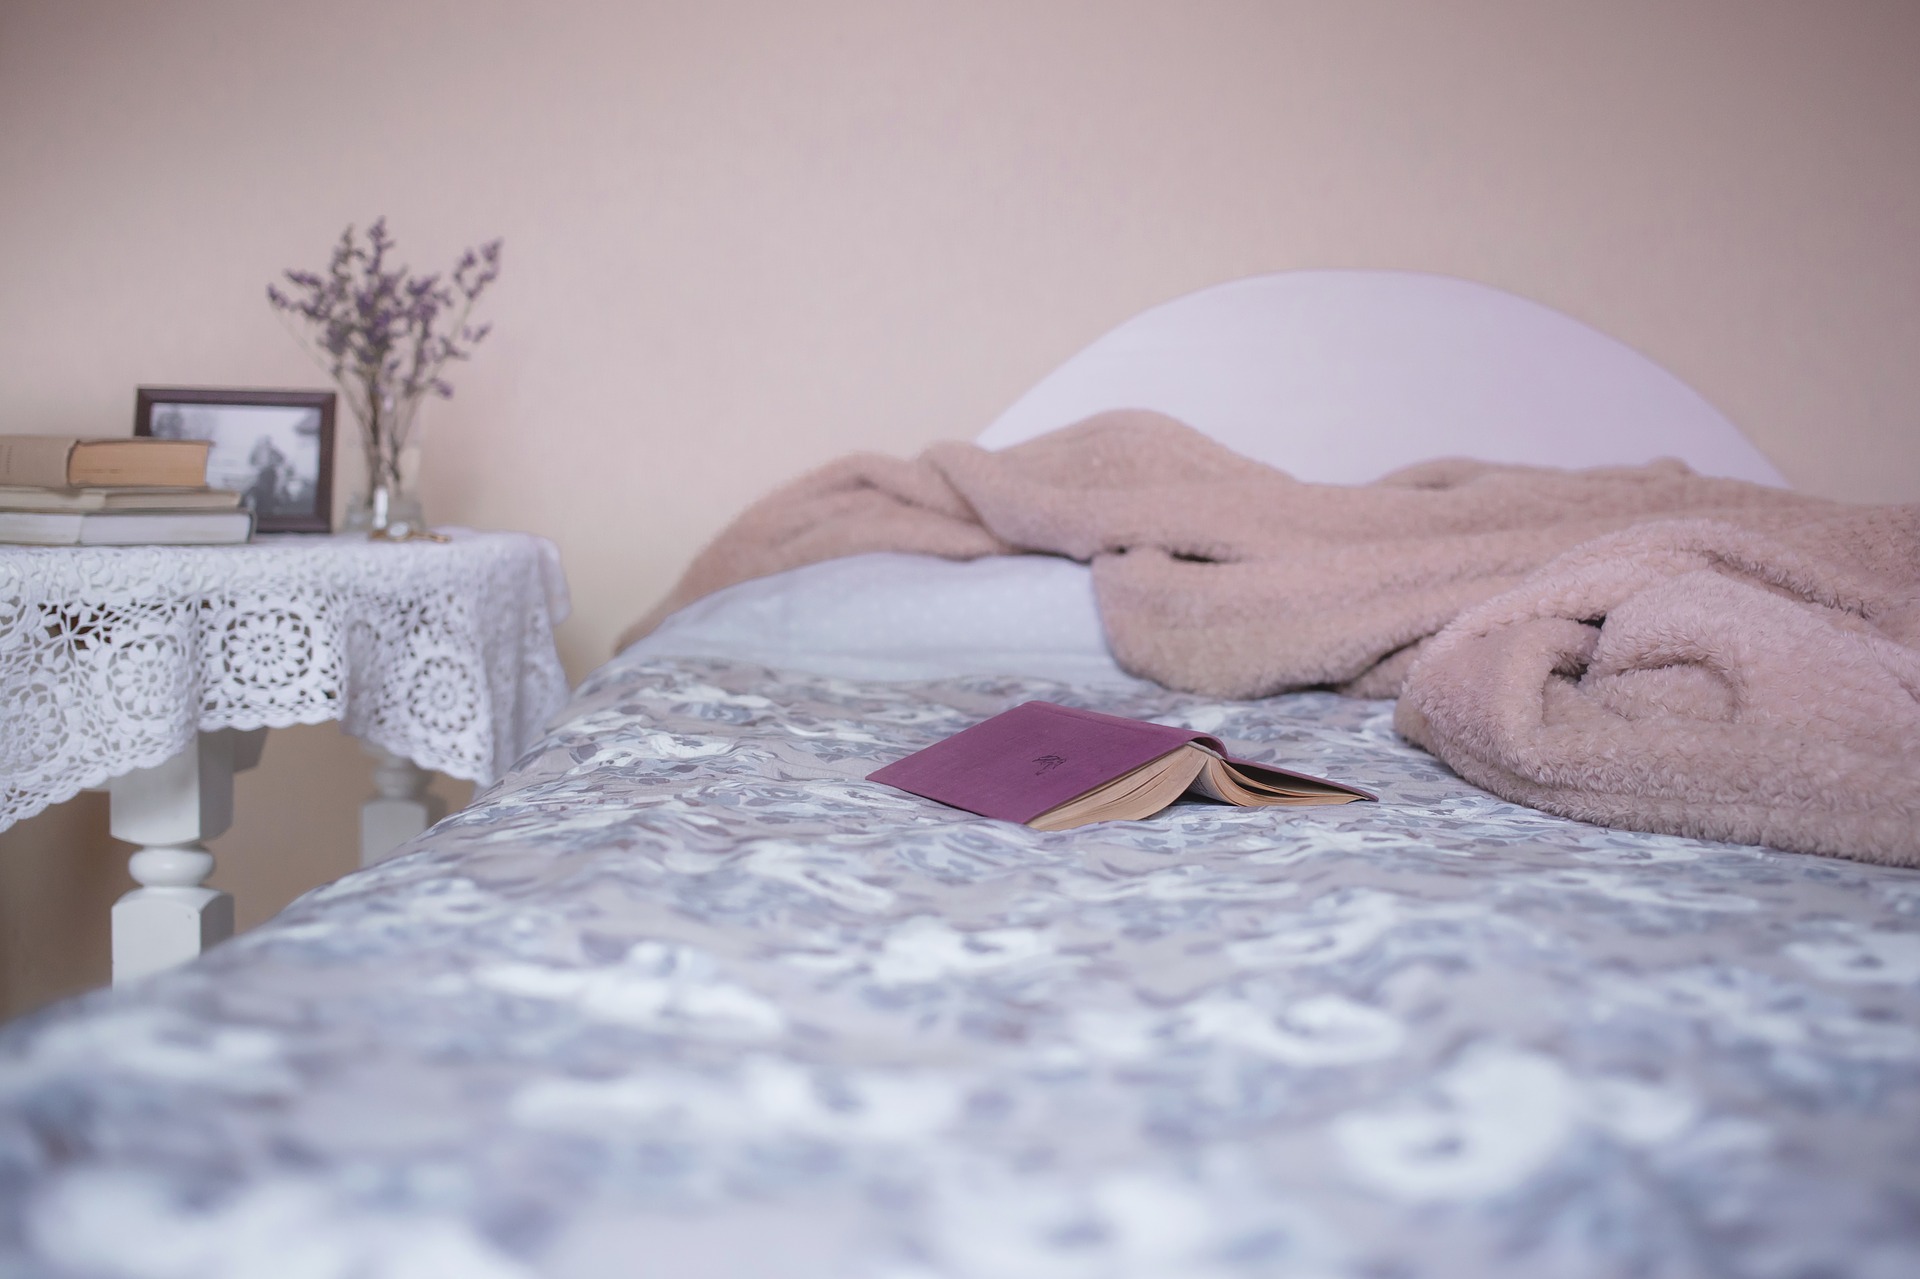 כיצד המצעים שלכם משפיעים על איכות השינה?